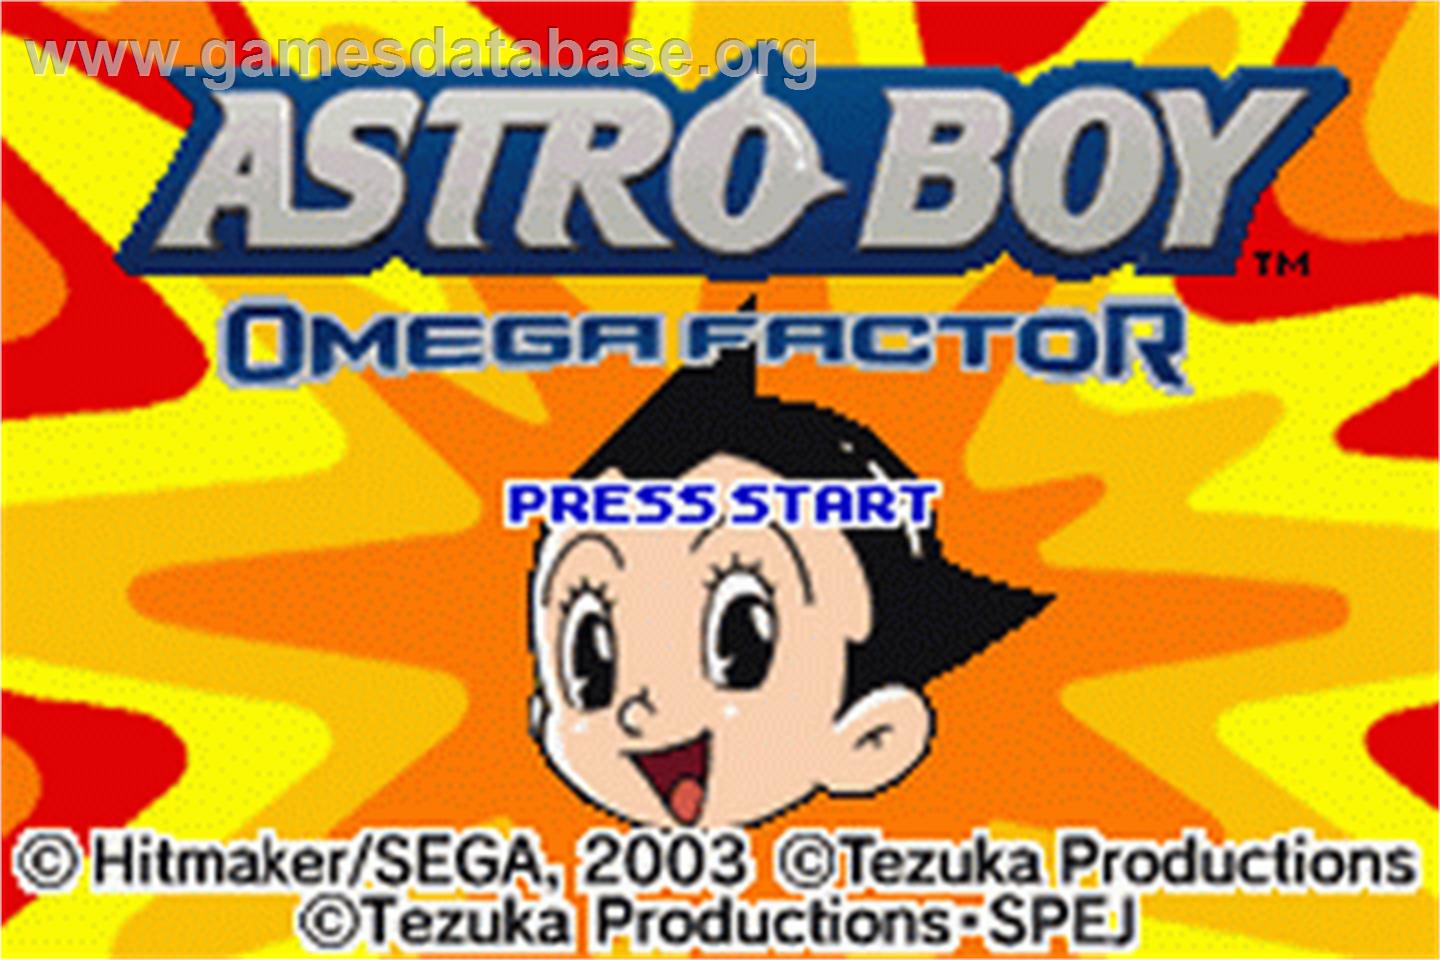 Astro Boy: Omega Factor - Nintendo Game Boy Advance - Artwork - Title Screen